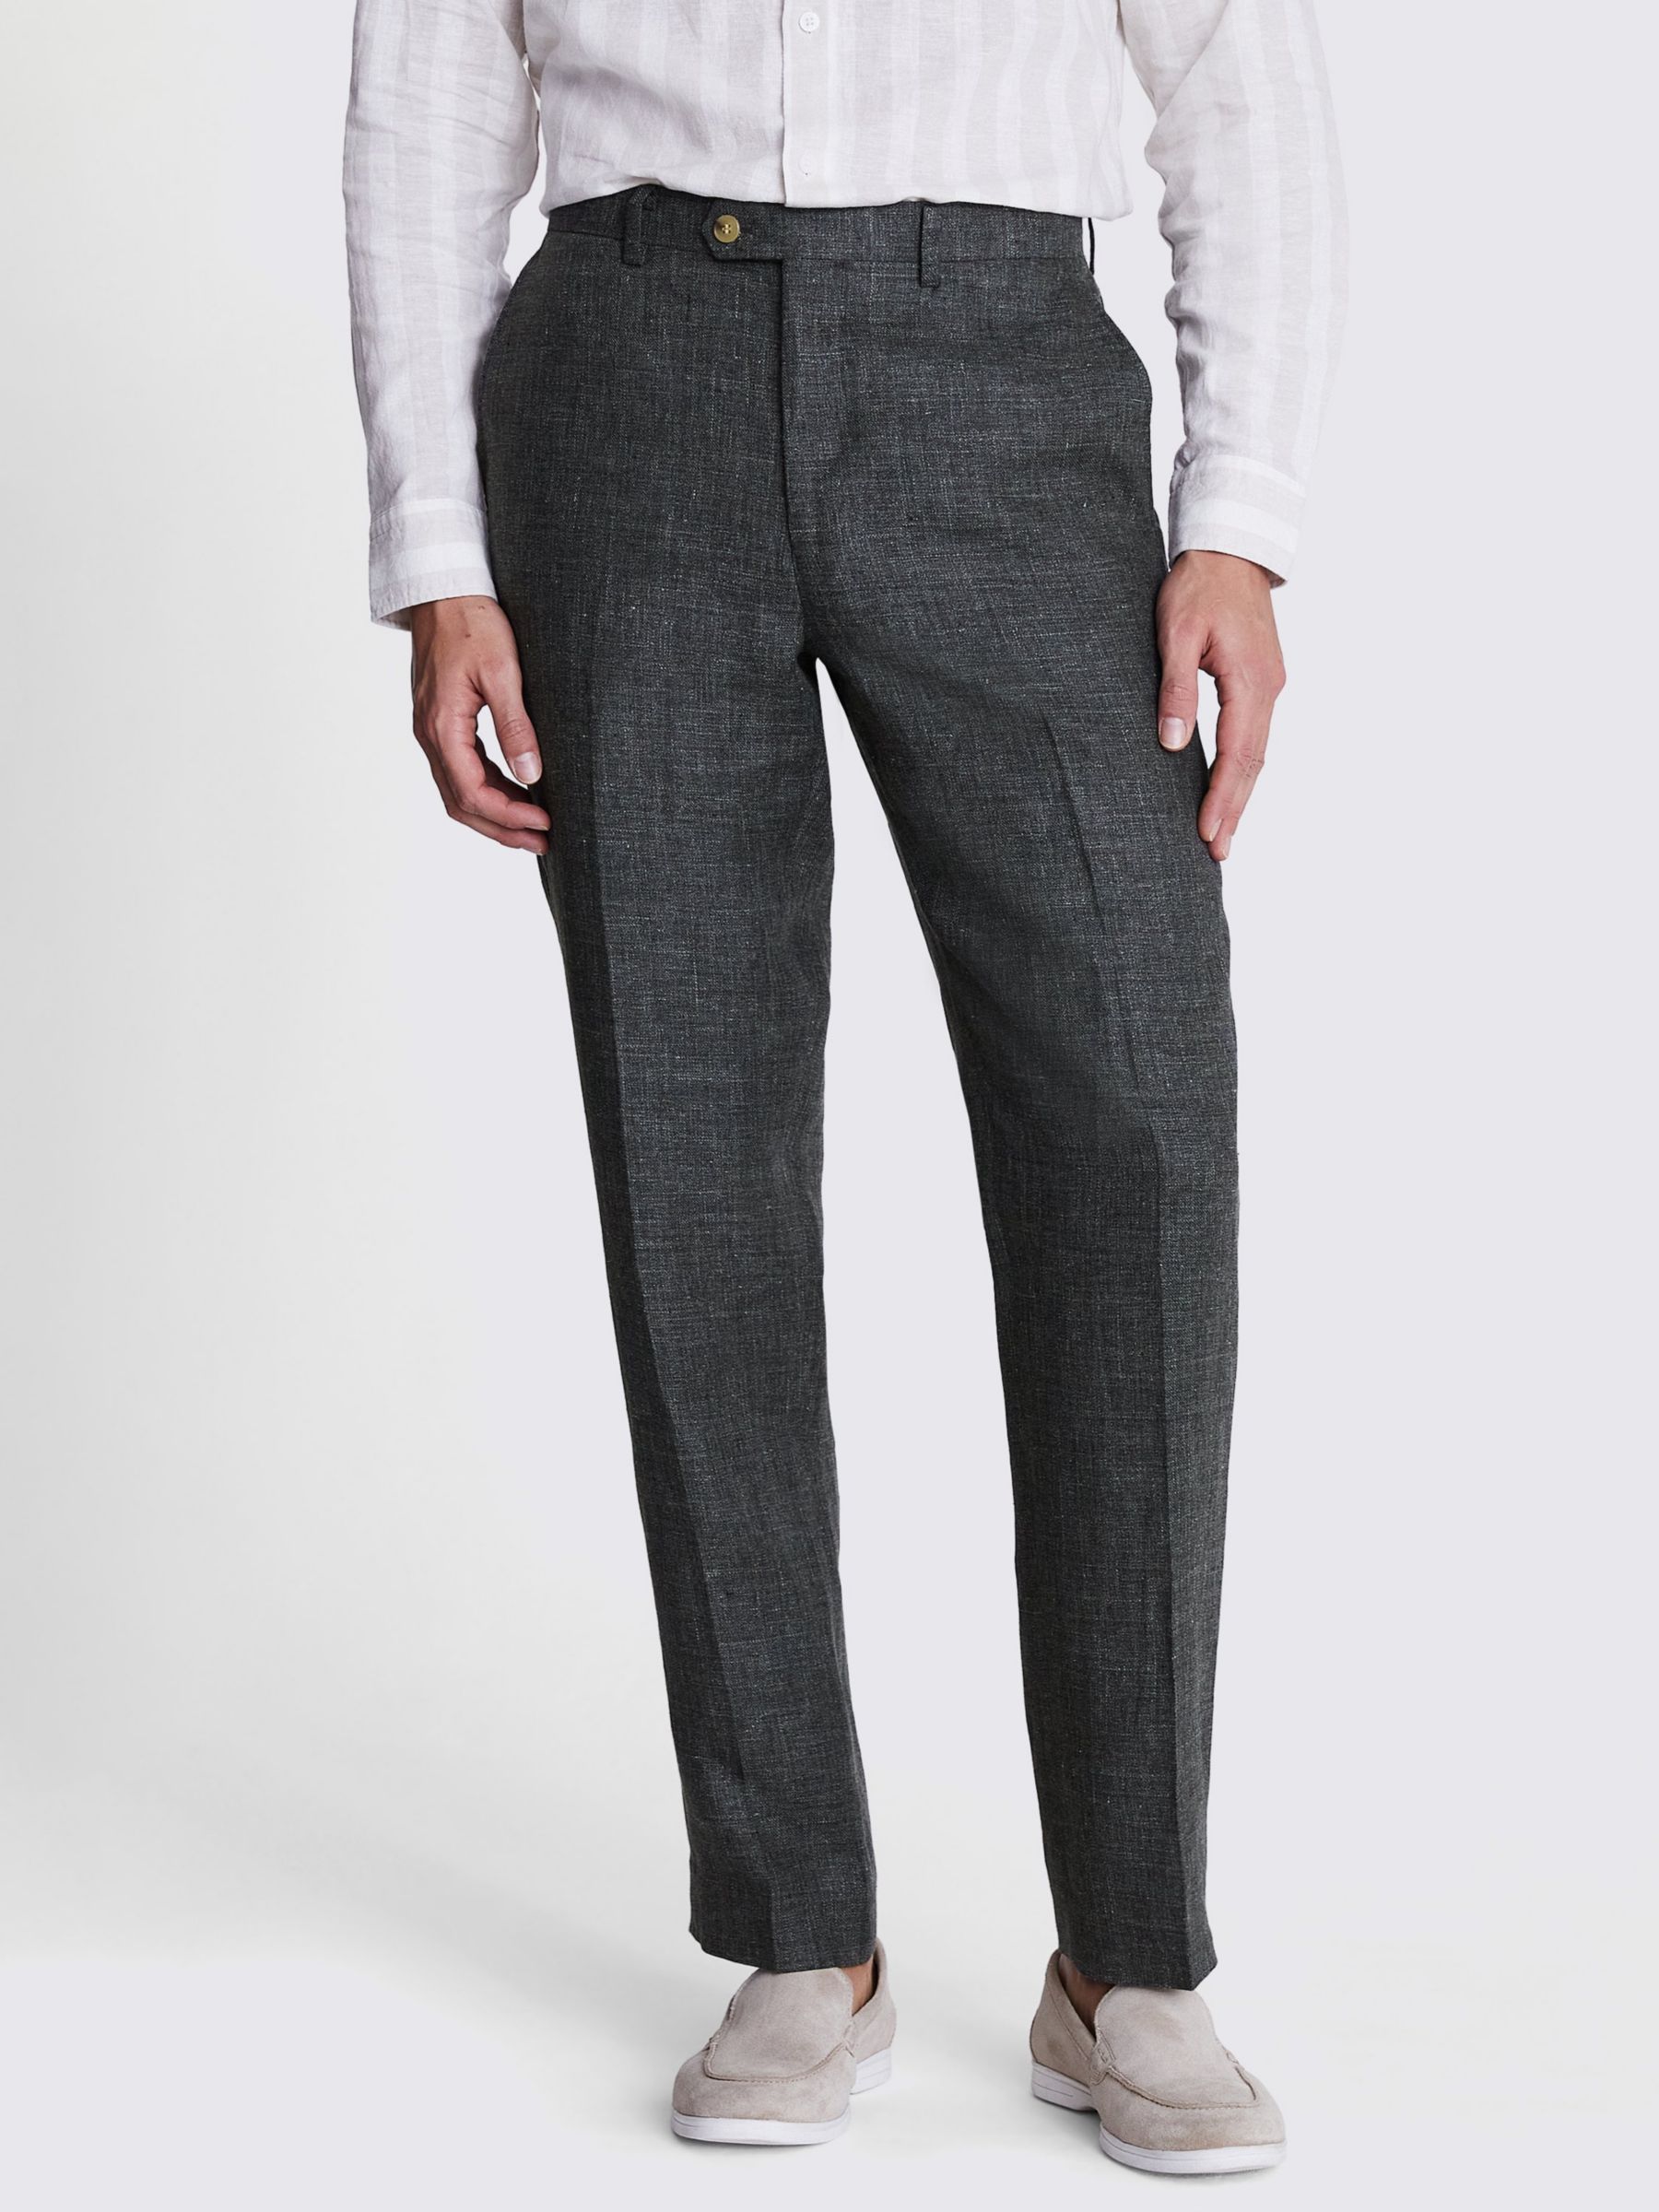 Moss Regular Fit Linen Suit Trousers, Khaki, 32L